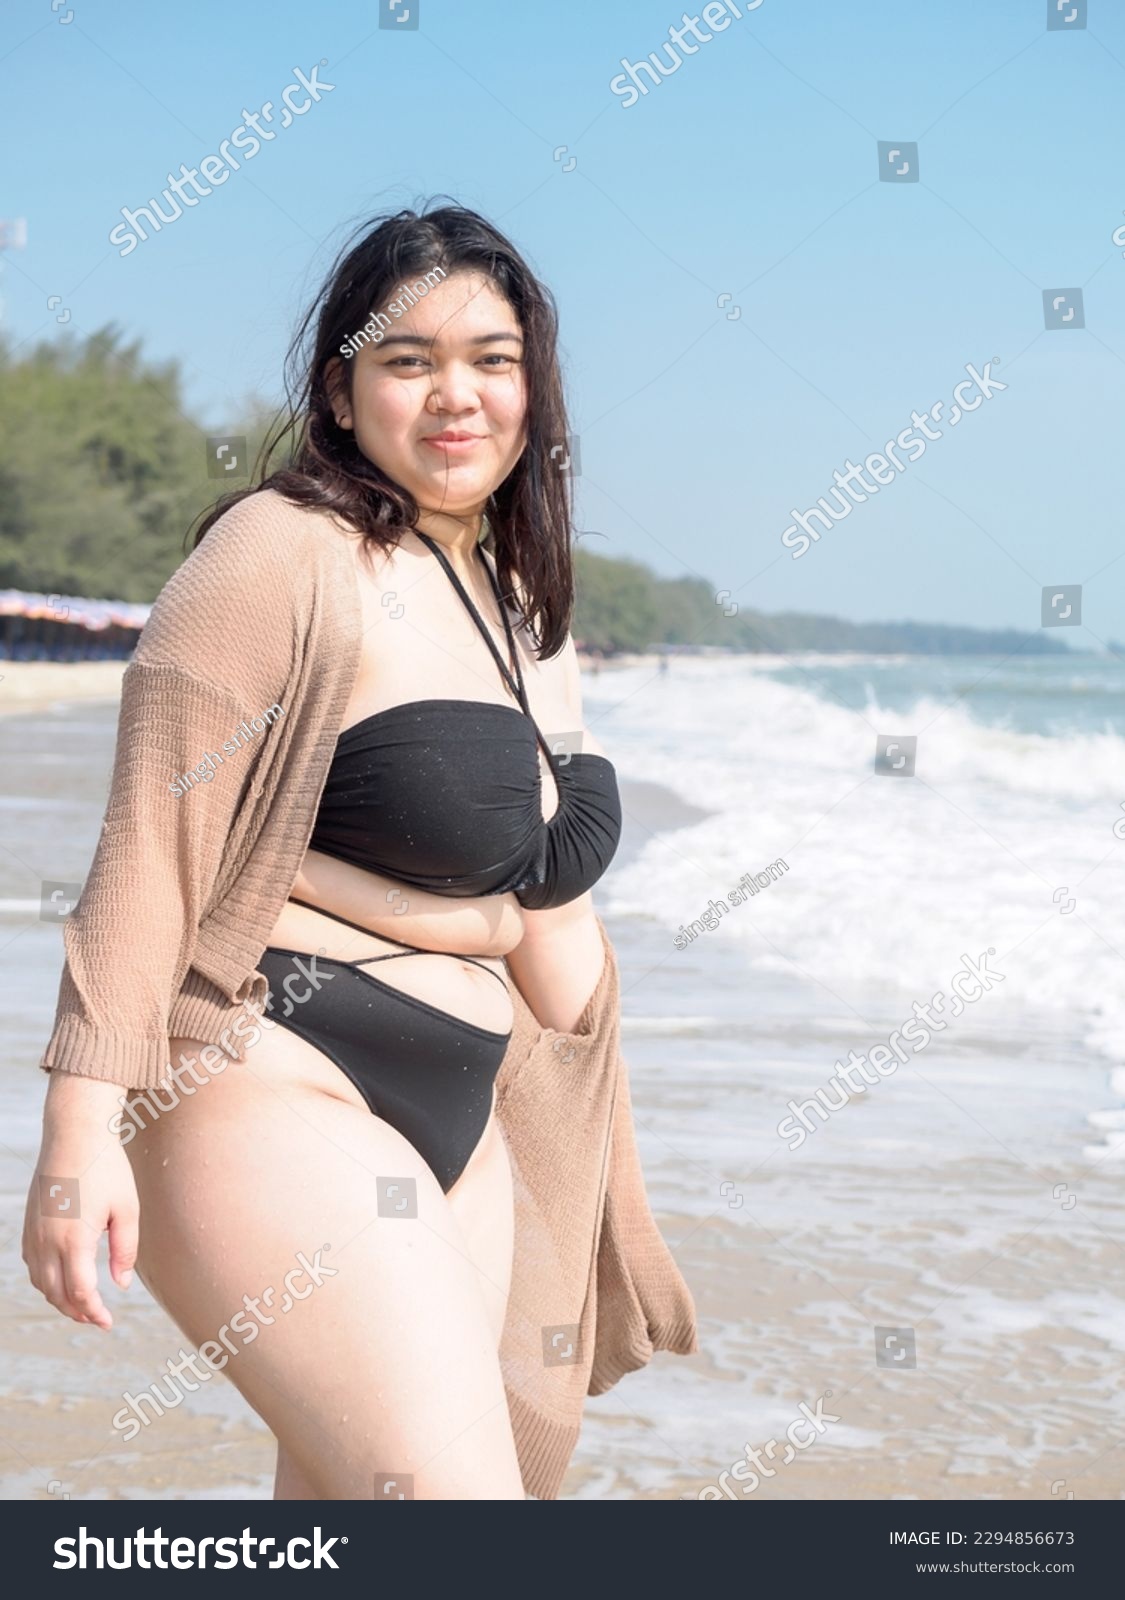 sexy chubby asian women